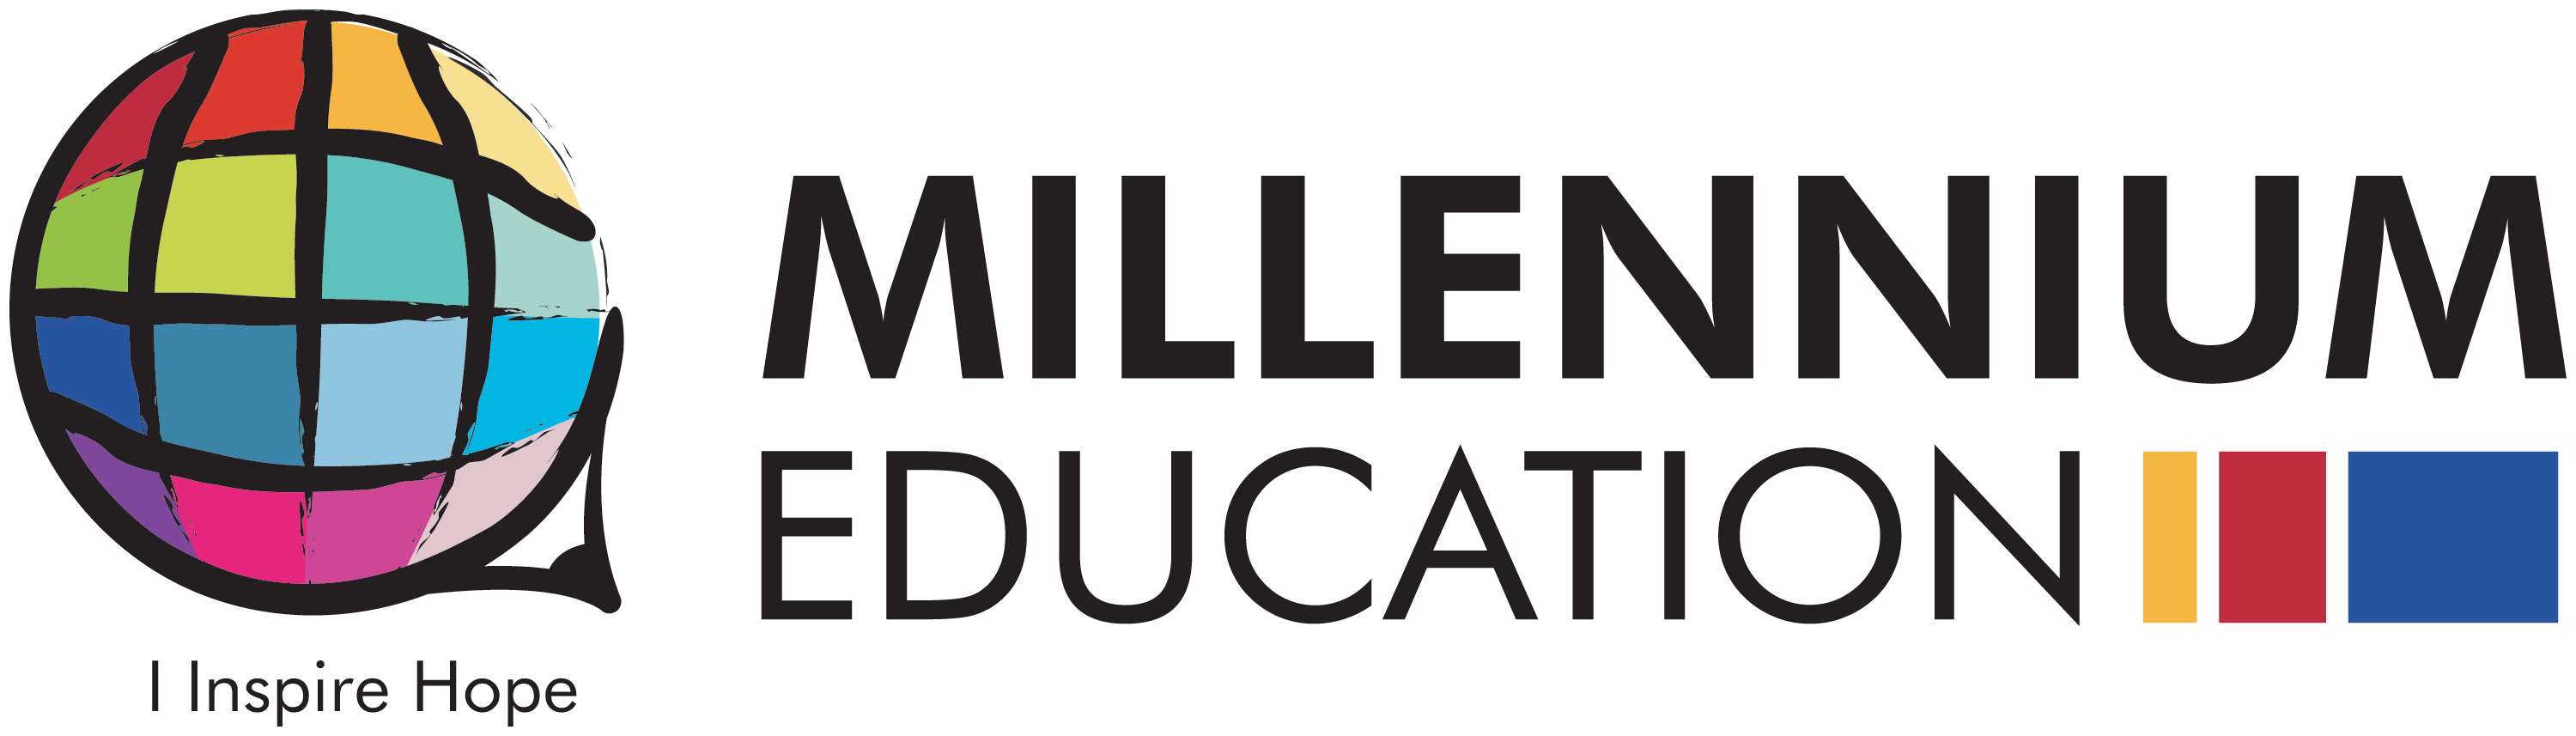 Millennium Education